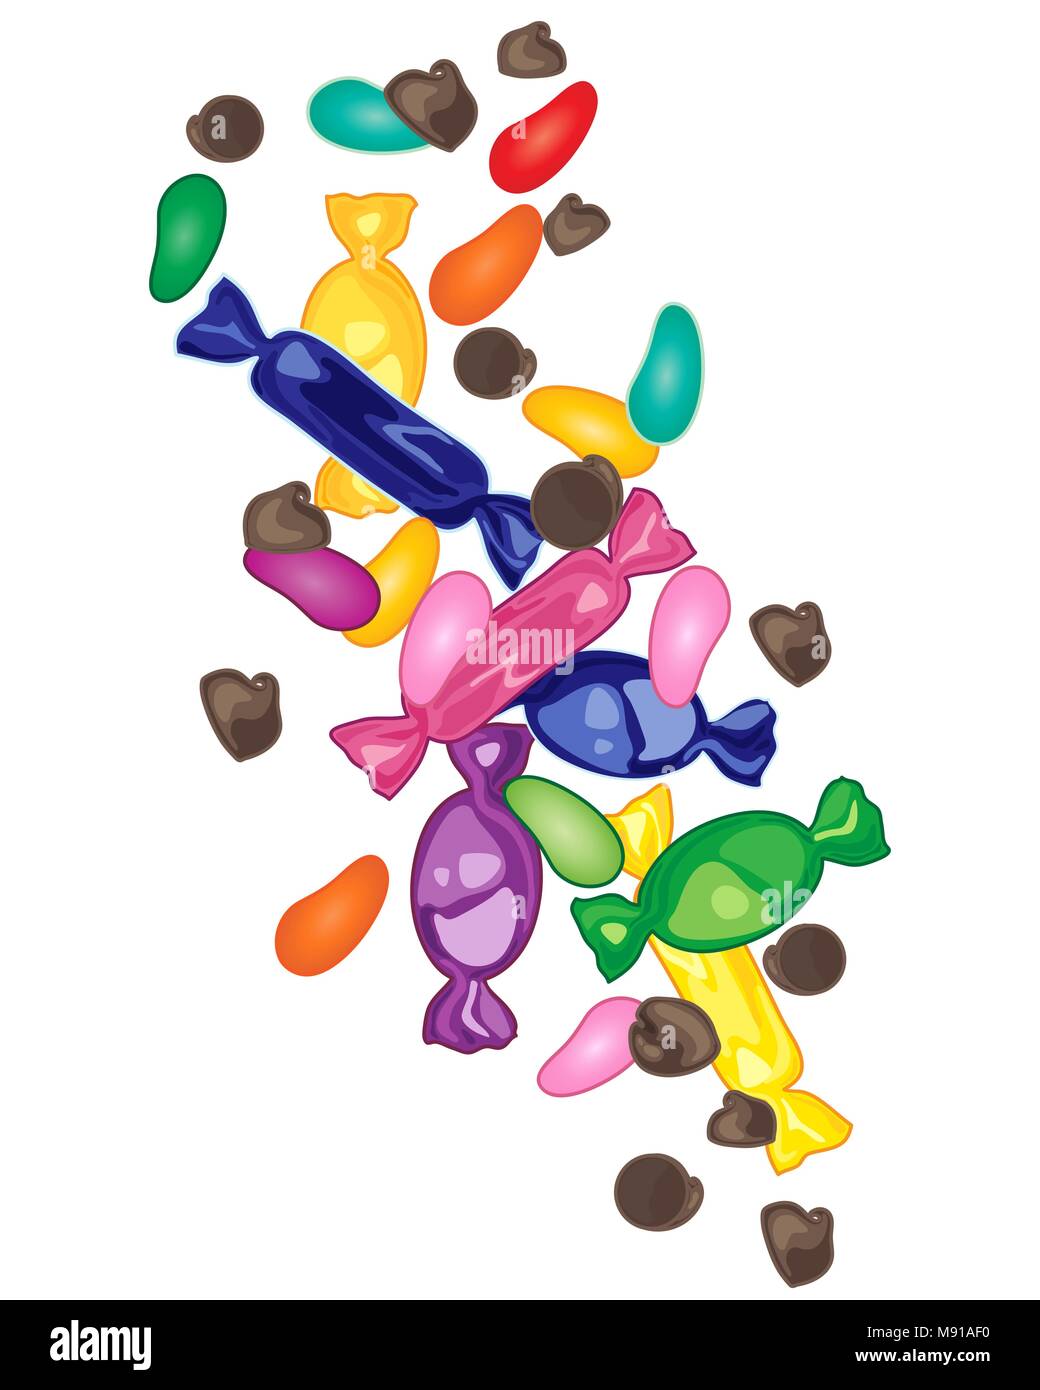 Un vecteur illustration en format eps 10 de bonbons colorés doux y compris les bonbons haricots enveloppés de sucreries et de chocolat sur fond blanc Illustration de Vecteur